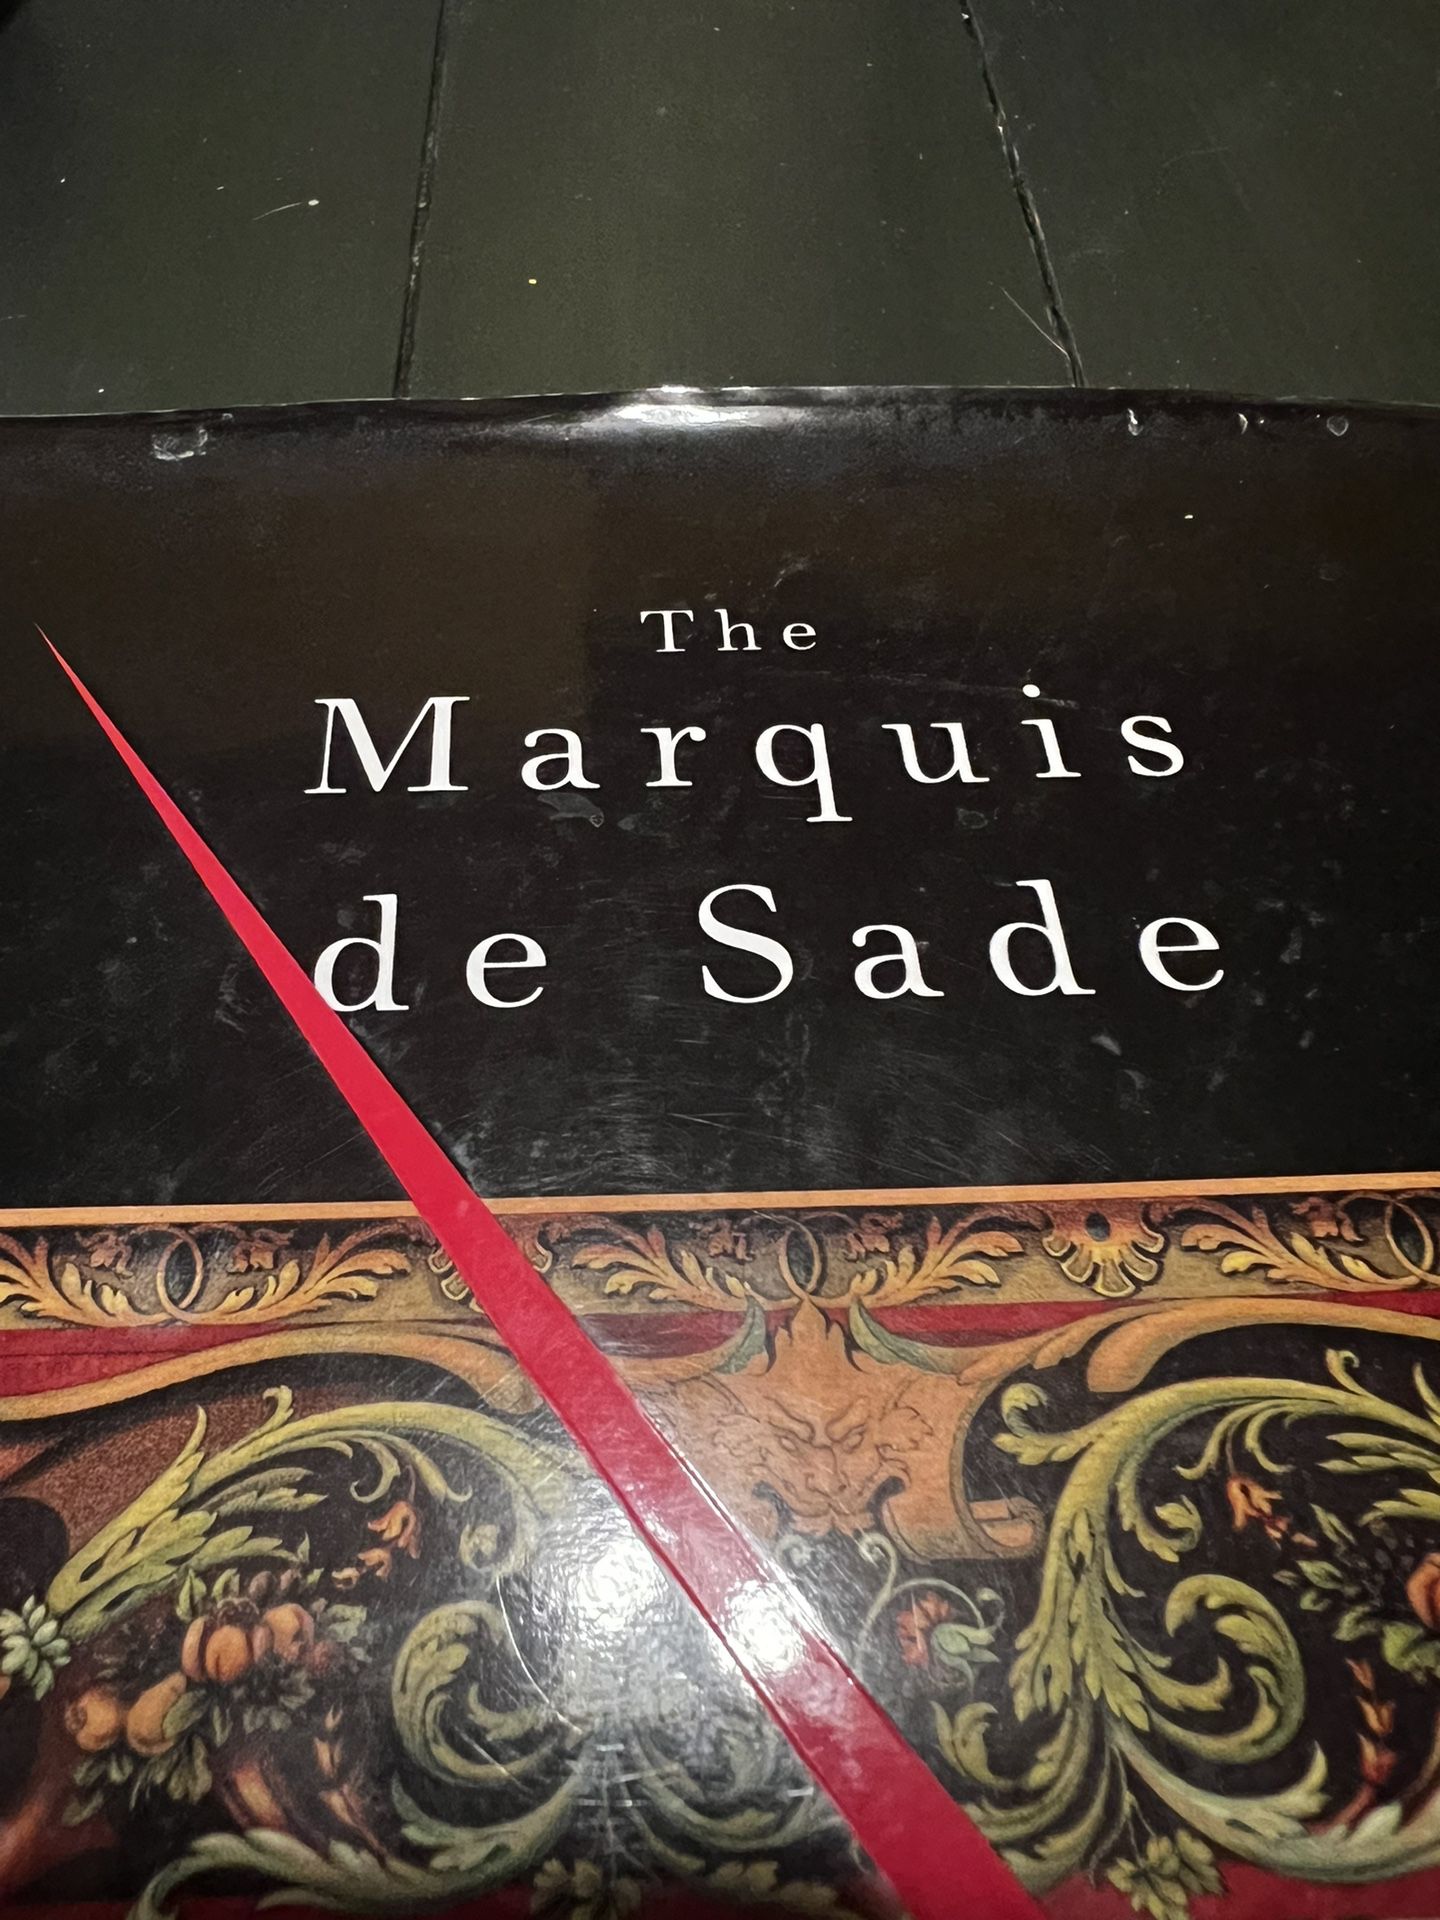 EUC Hardcover Book THE MARQUIS DE SADE: A Life By NEIL SCHAEFFER